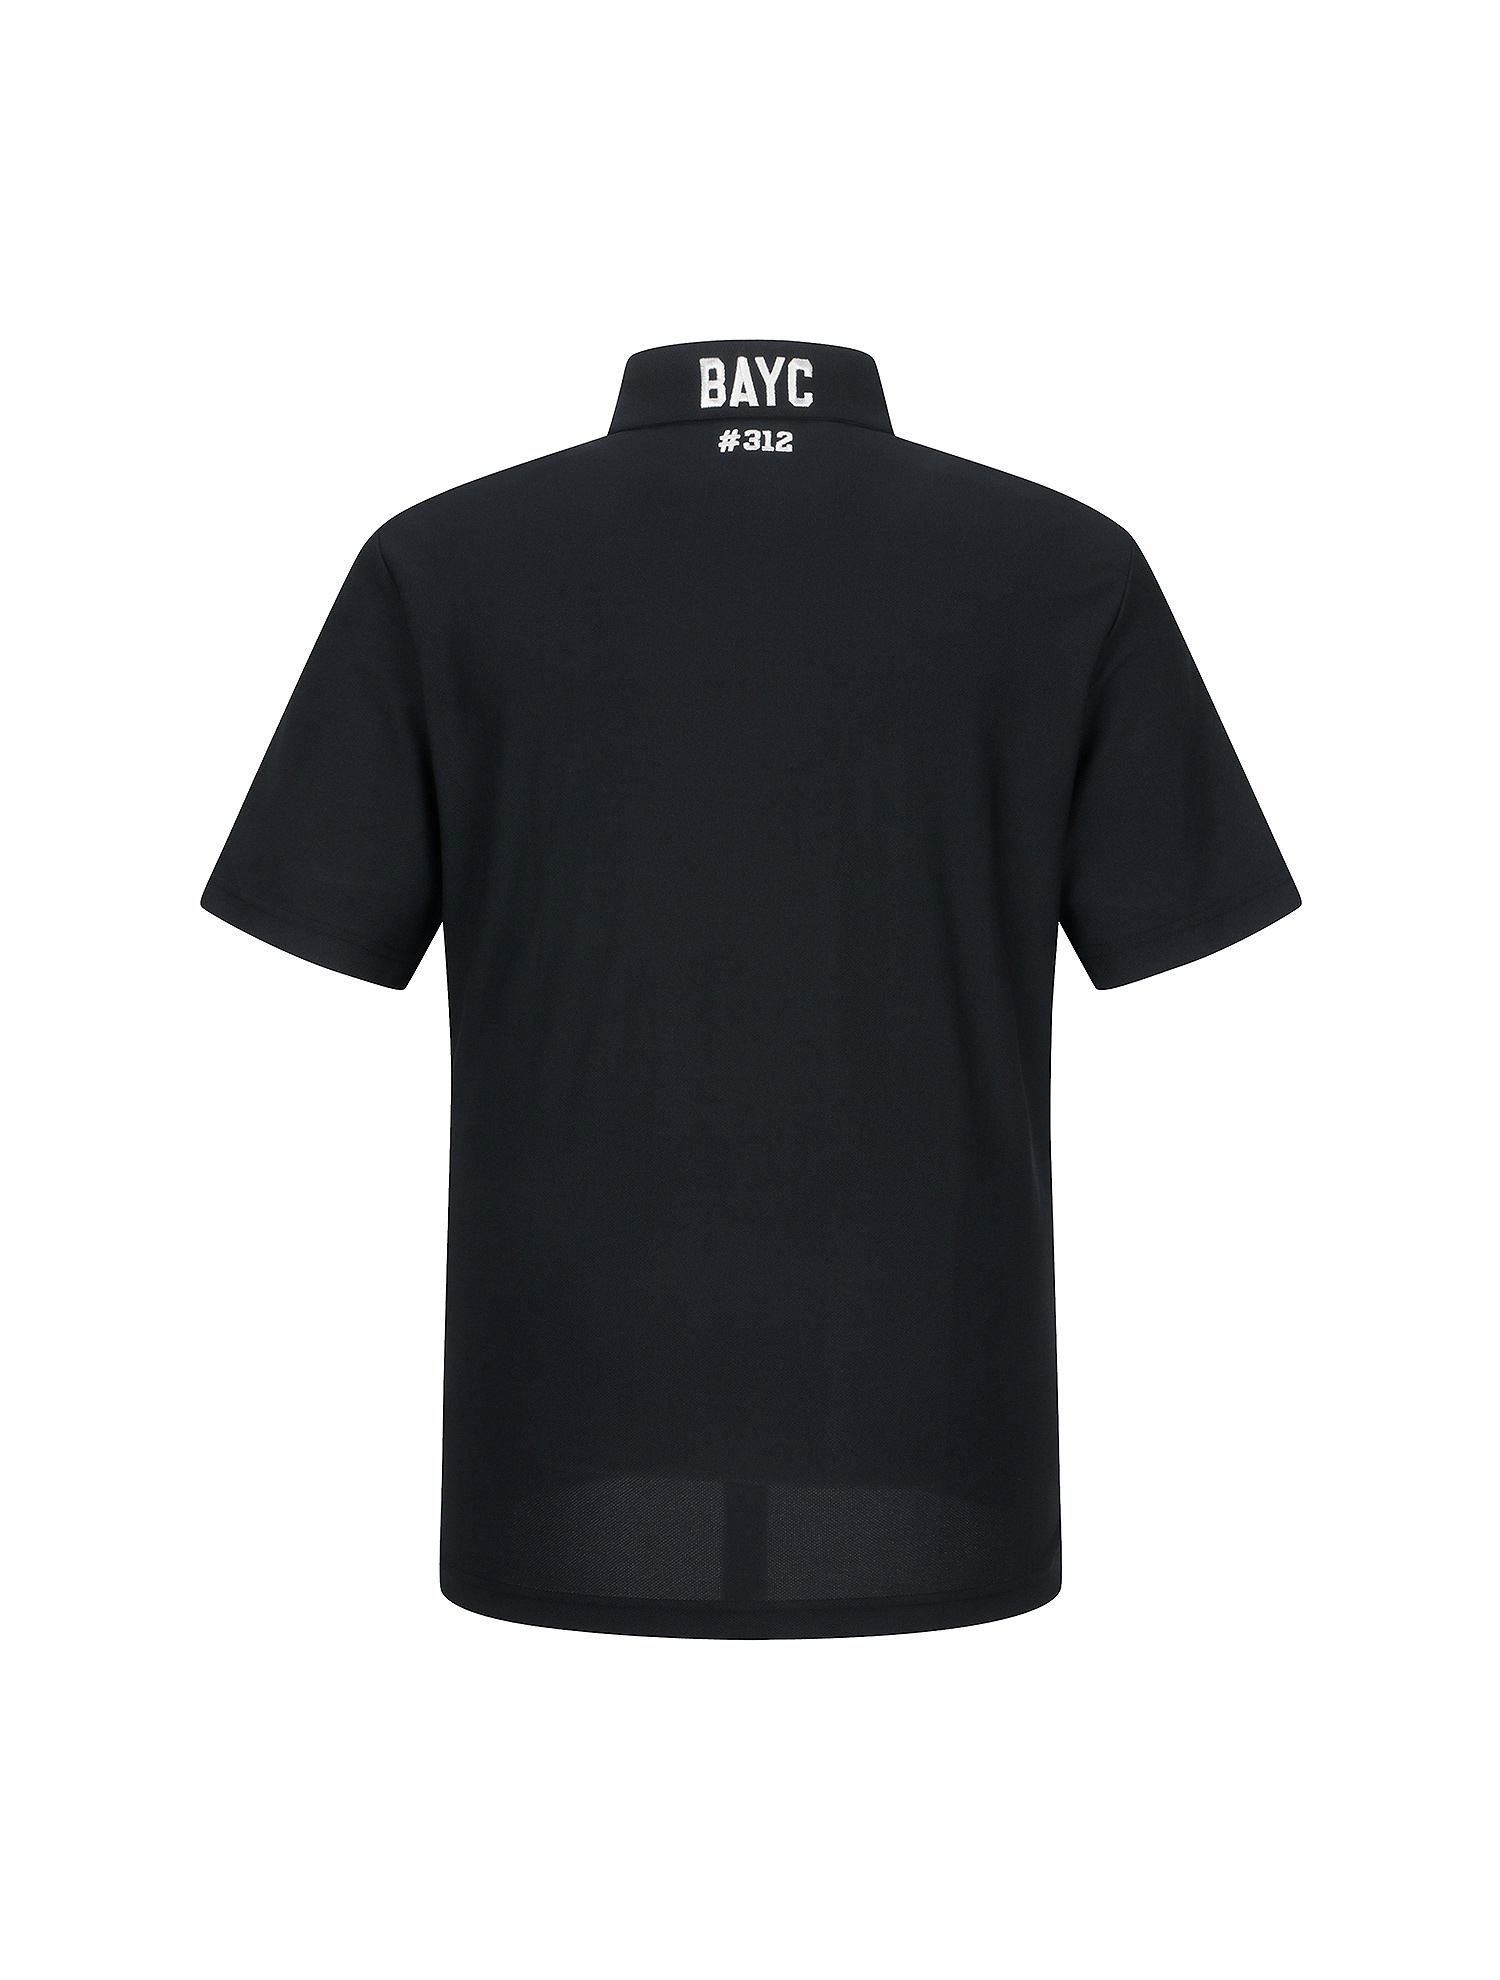 Collaboration Pique Shirts_Black (Men) (QM0EKS20339)